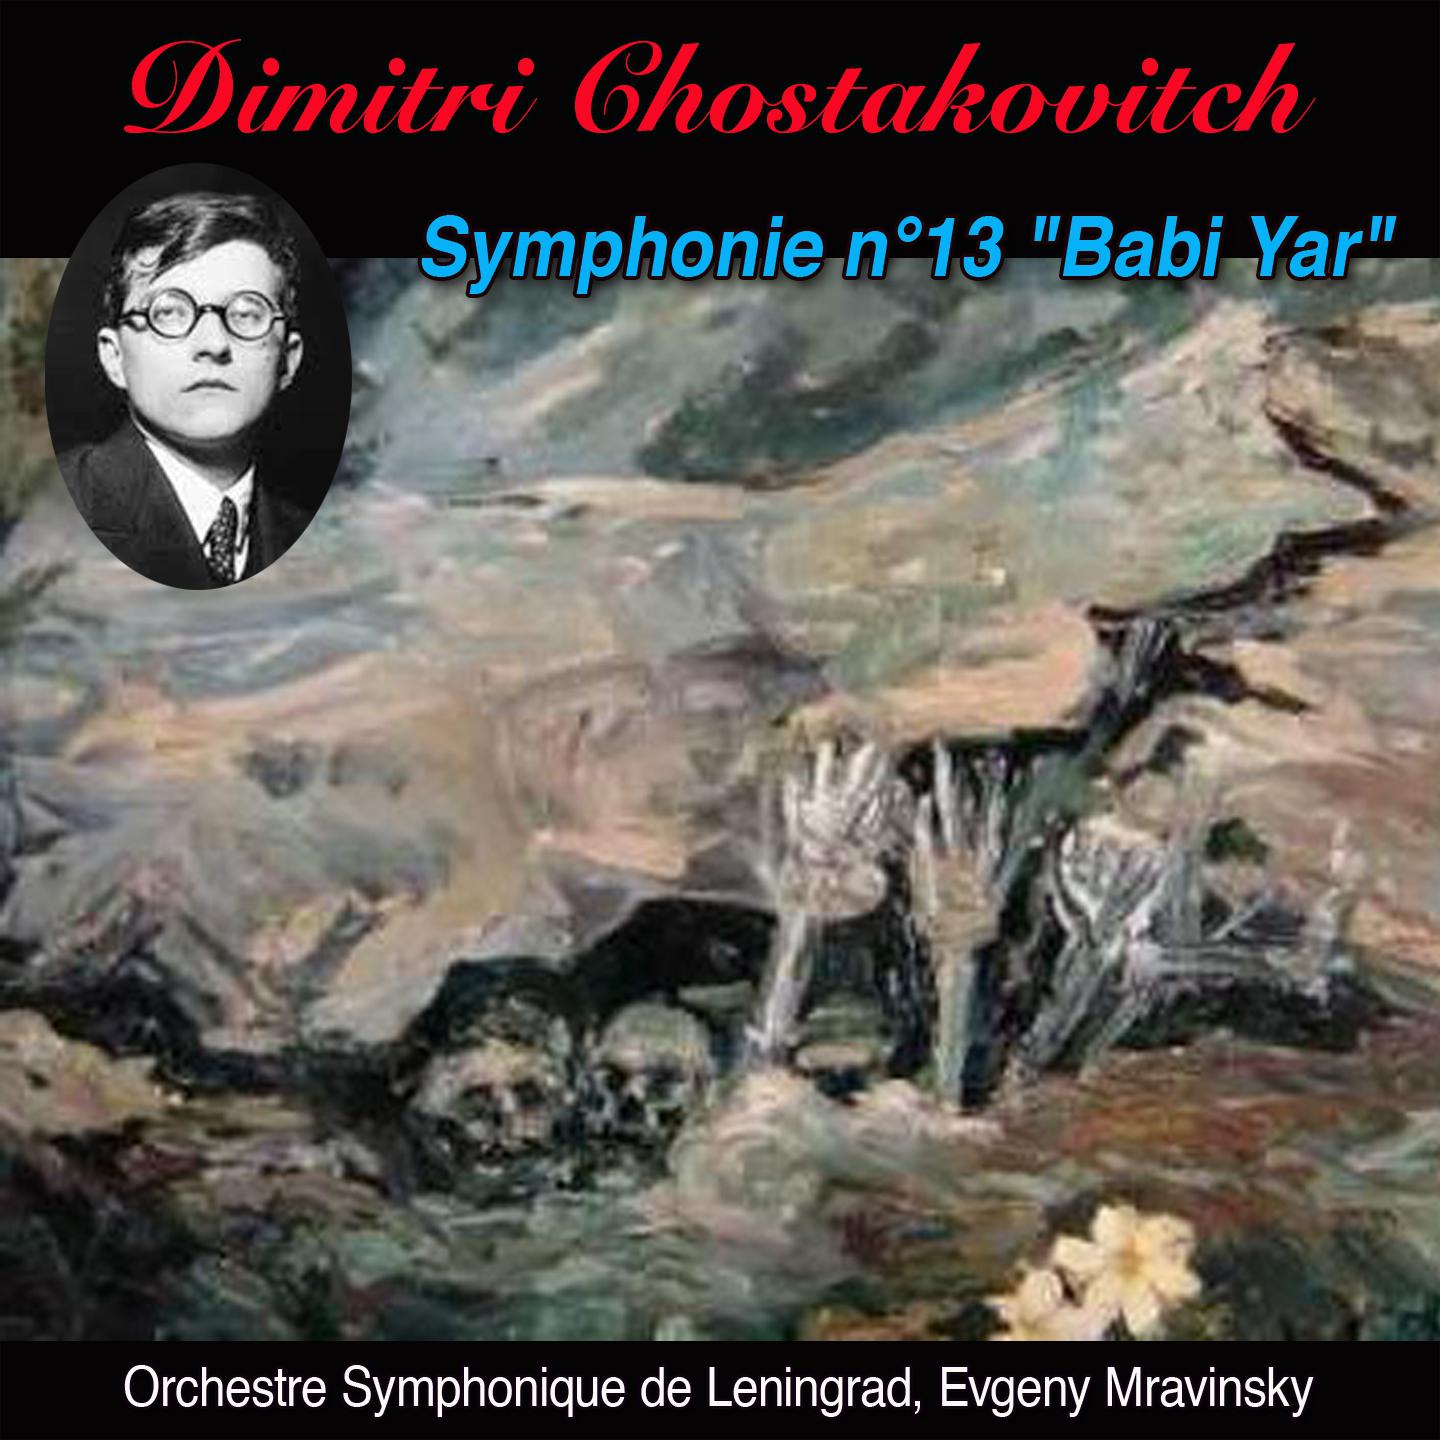 Babi yar allegretto final Symphonie n 13 op. 113 " Babi yar"